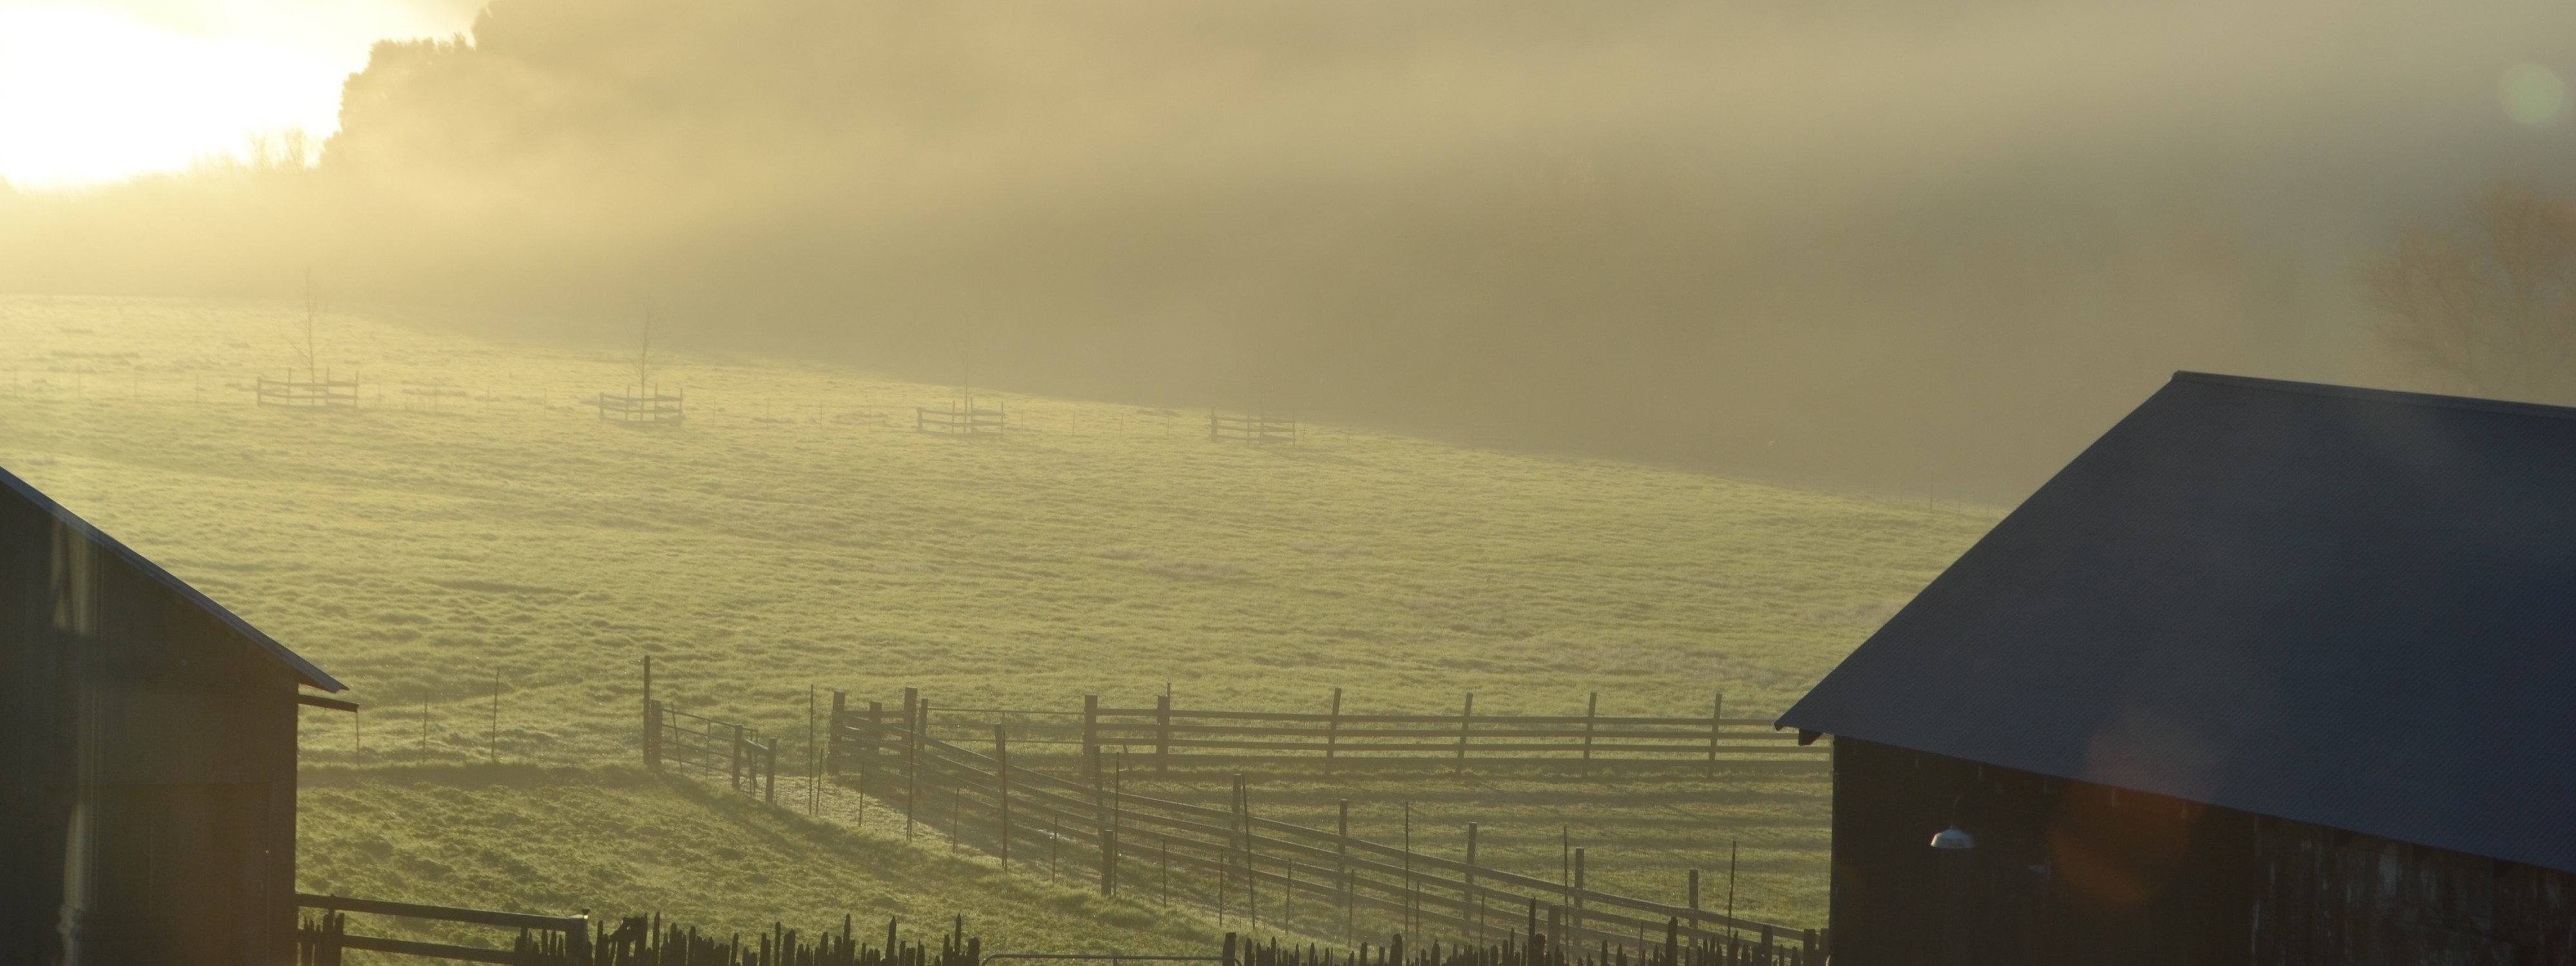 Chileno Valley Ranch Fog